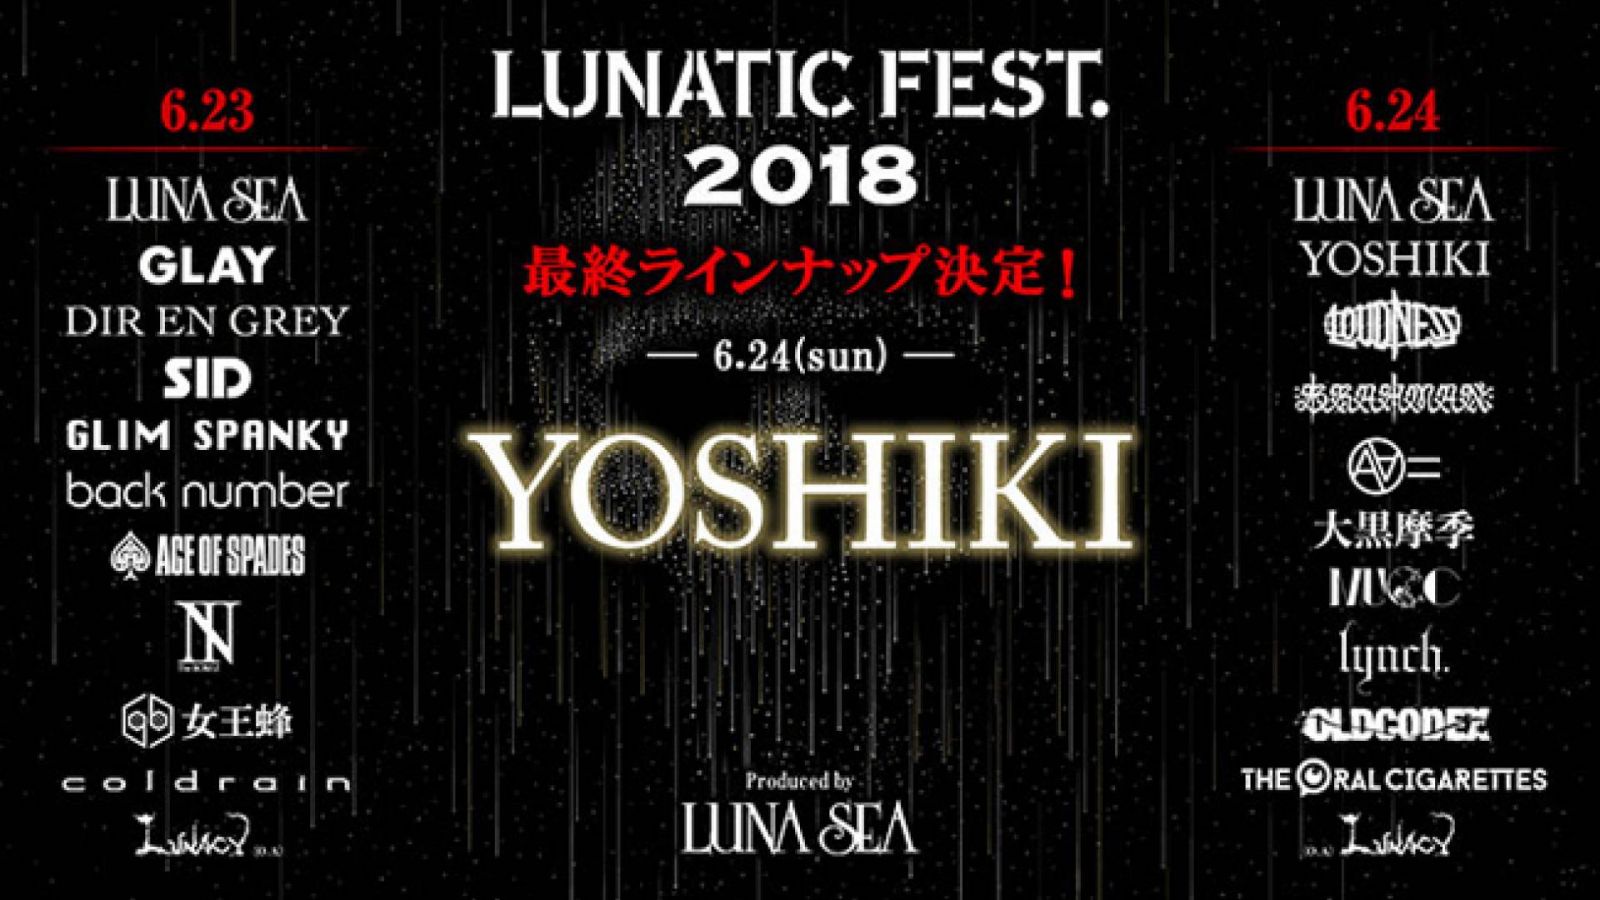 YOSHIKI выступит на LUNATIC FEST. © LUNATIC FEST. 2018